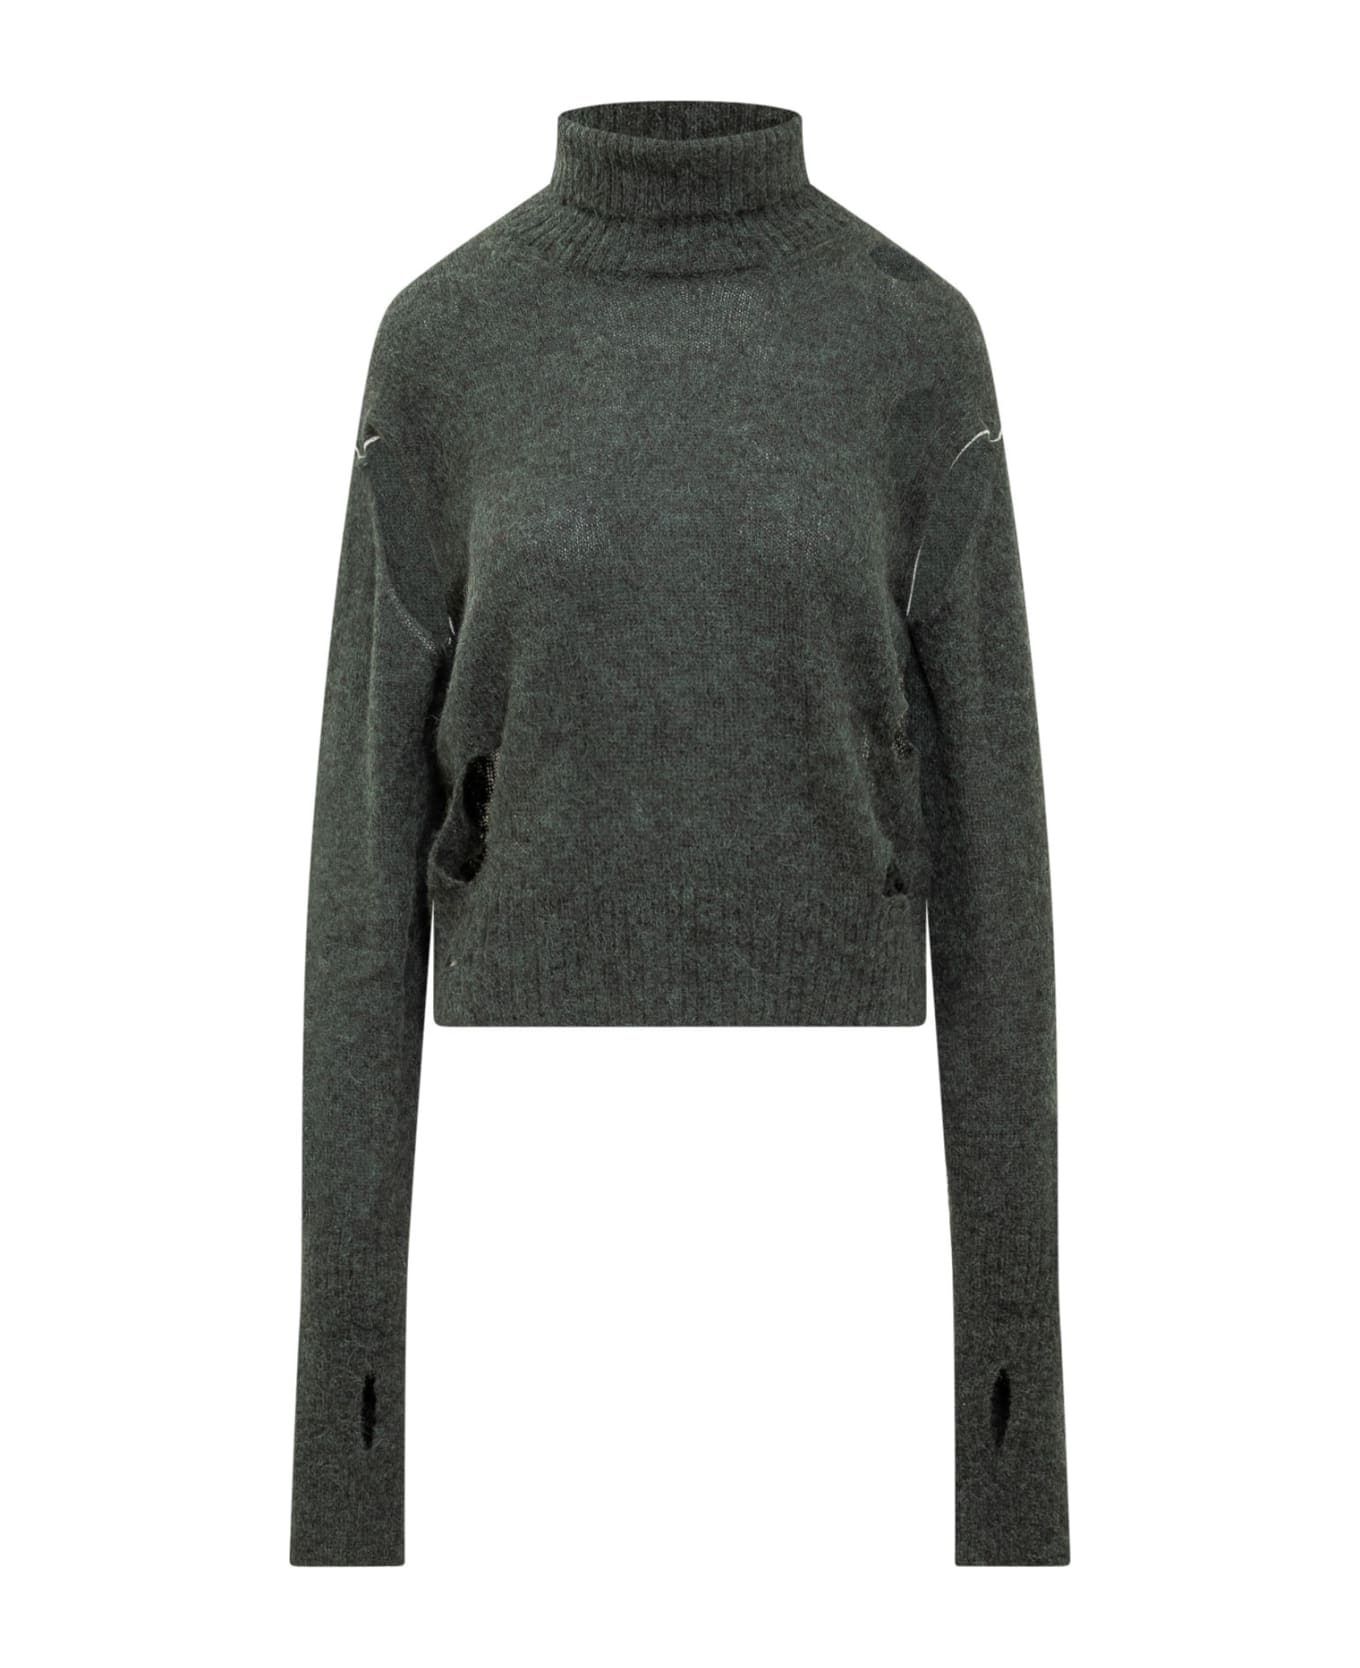 MM6 Maison Margiela Turtleneck Sweater - Green ニットウェア